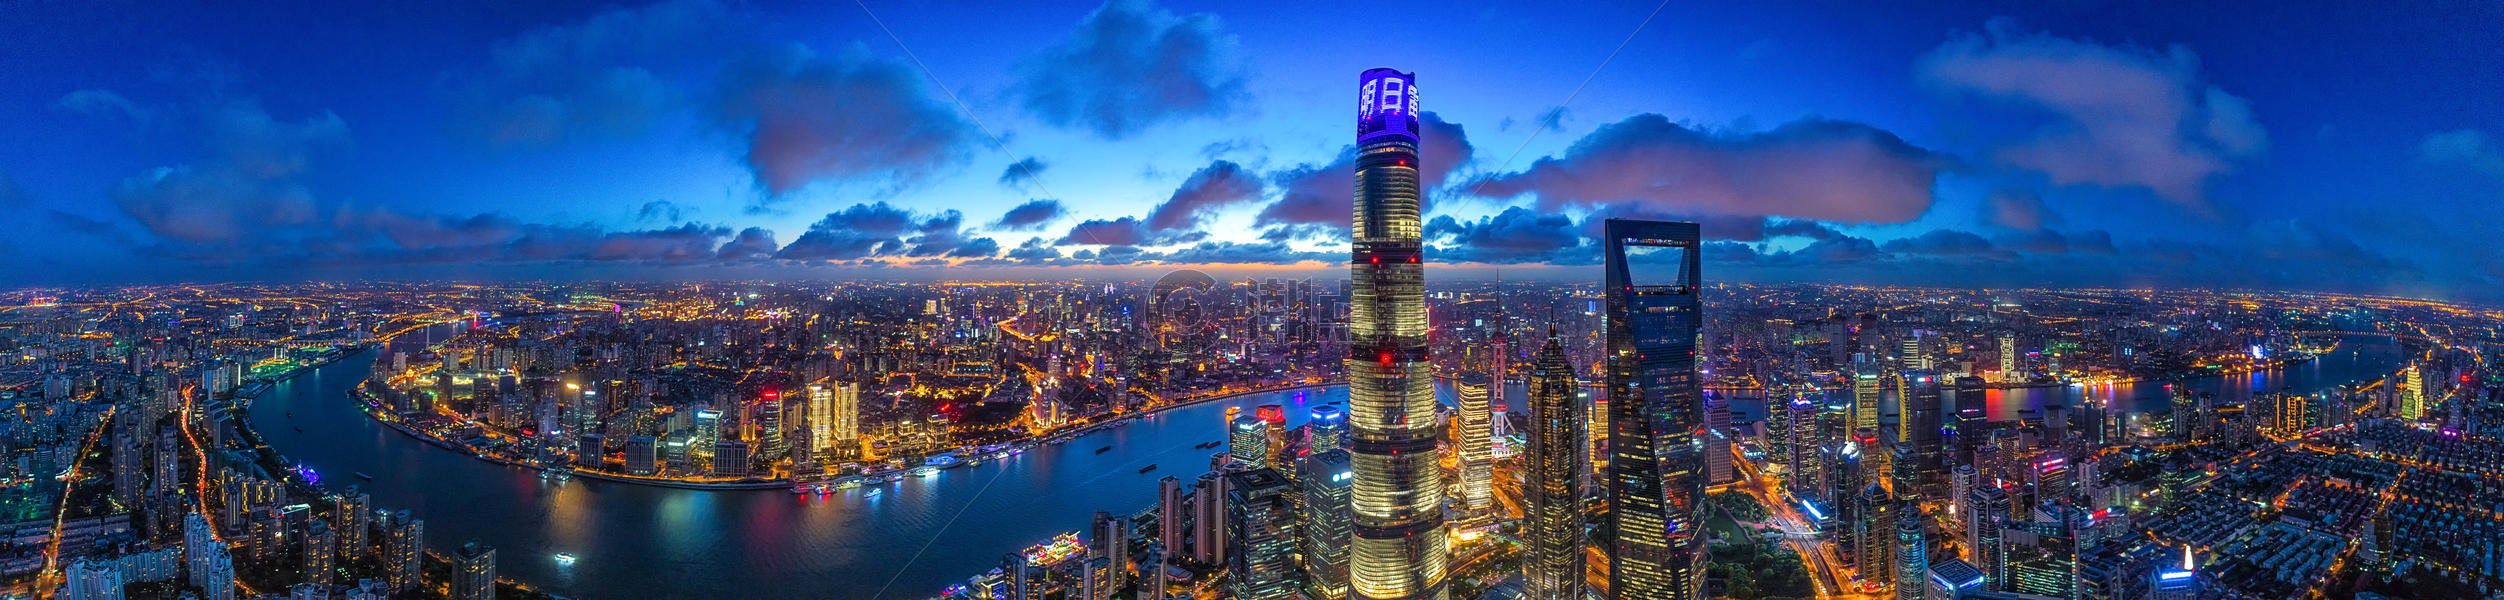 上海陆家嘴城市夜景图片素材免费下载